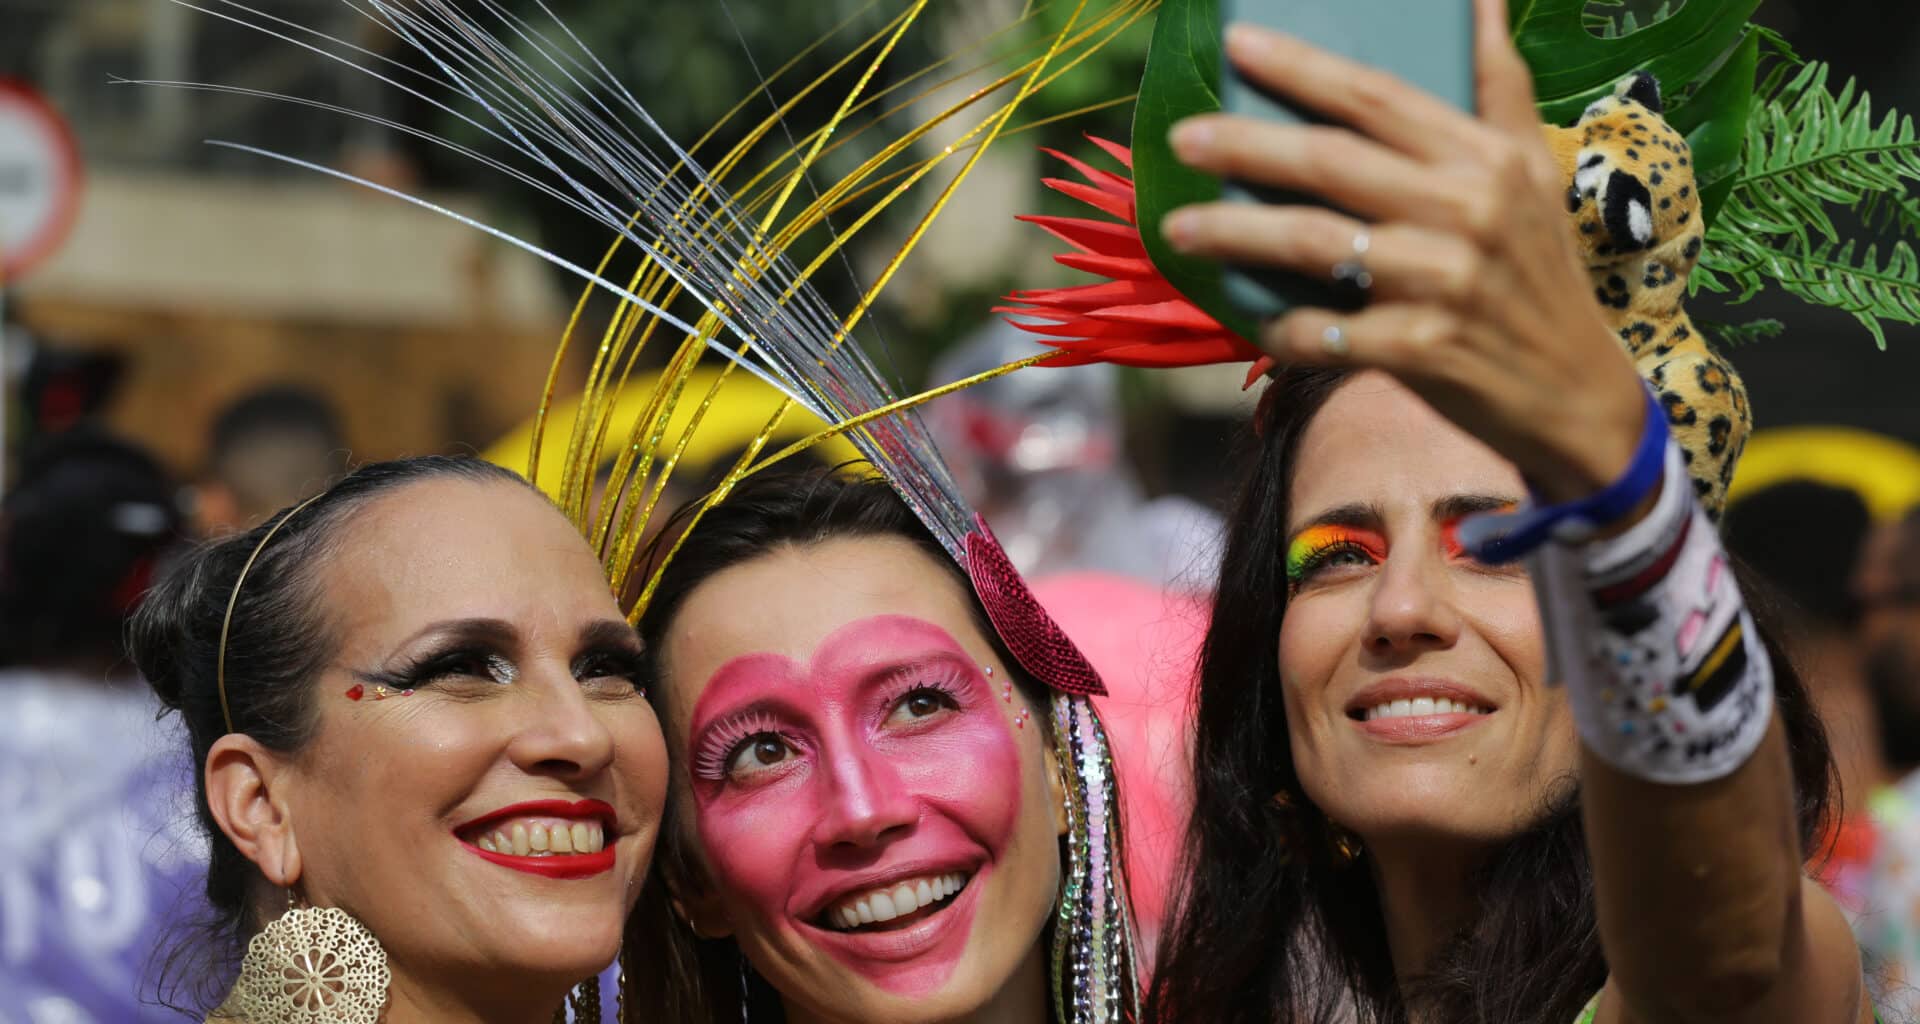 Mulheres fazem selfie com iPhone durante o carnaval